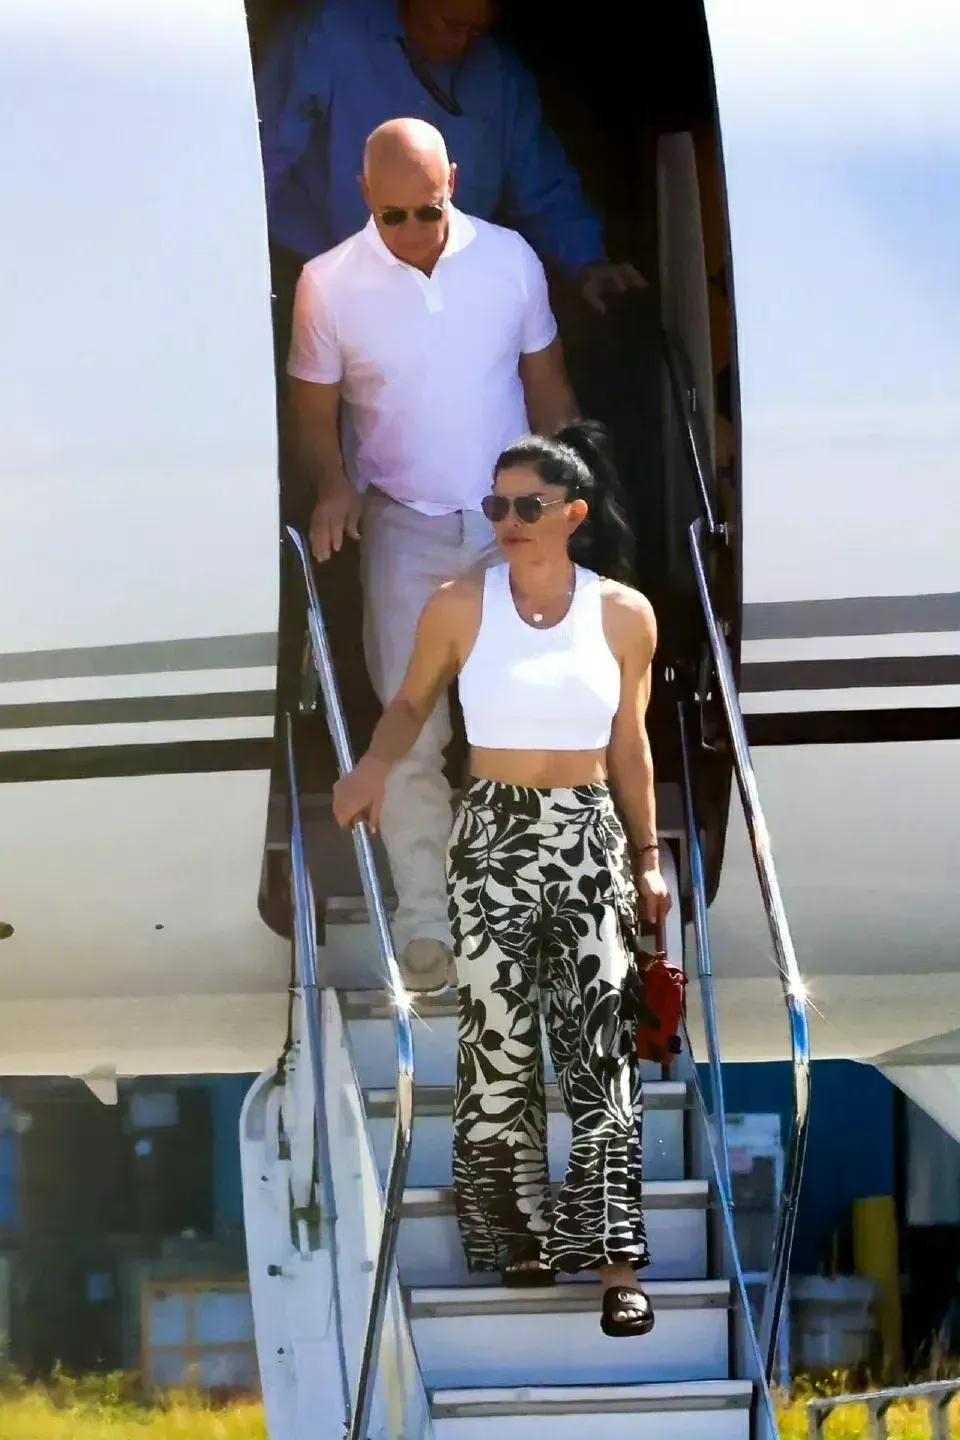 贝佐斯和女友桑切斯抵达迈阿密，俩人手牵手太温馨，桑切斯短衫配花裤挺时髦！

贝索(2)